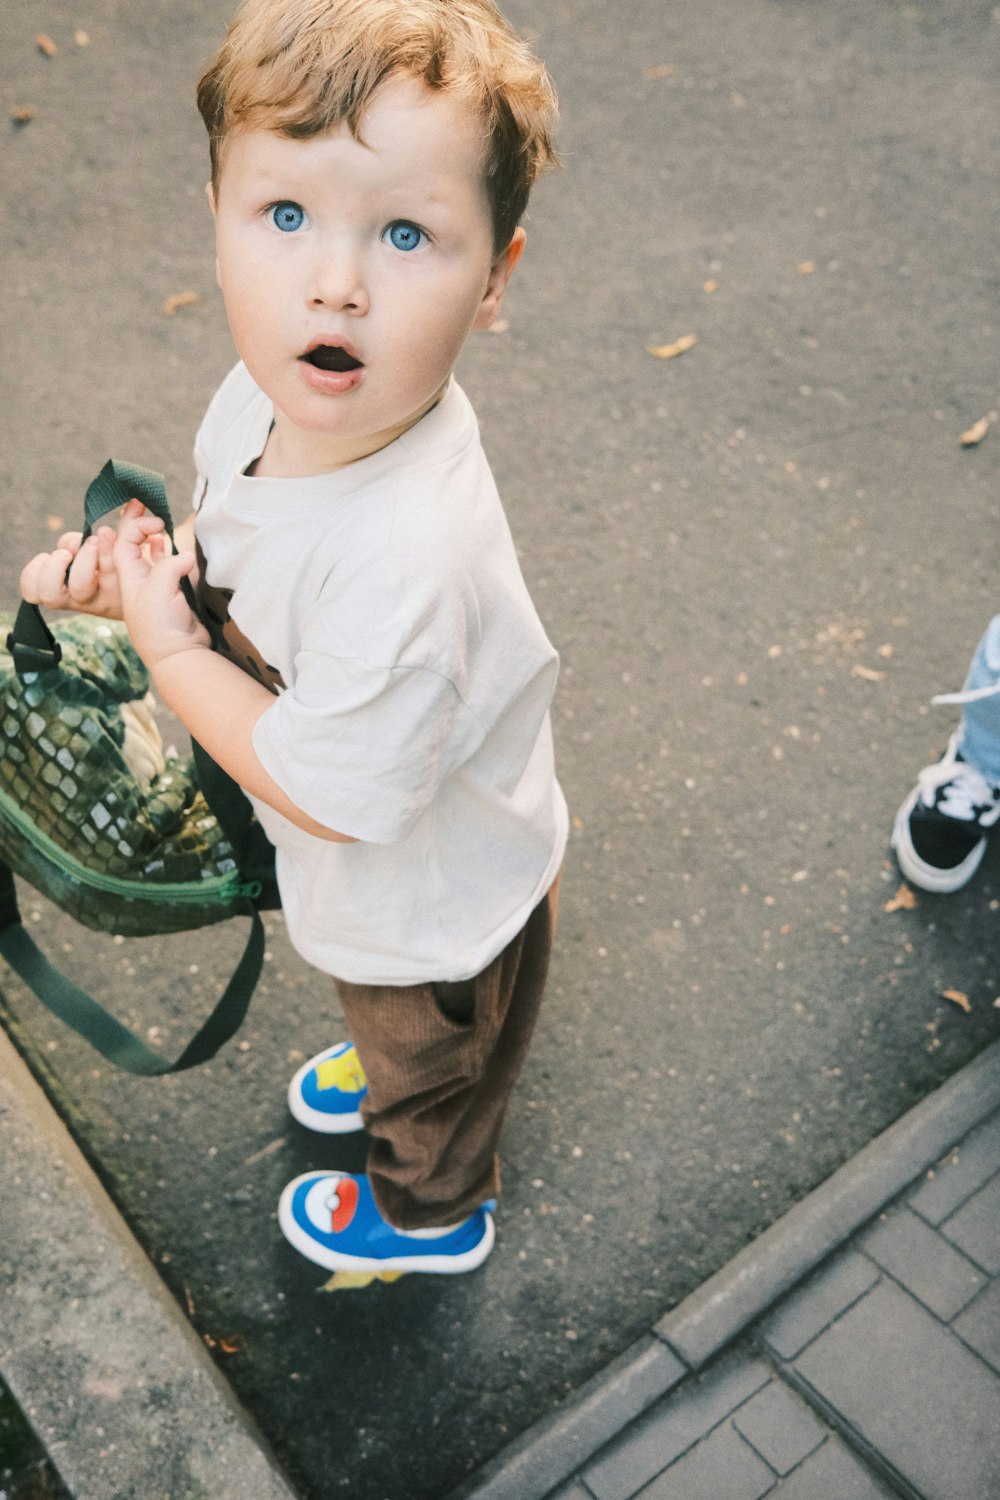 Un niño pequeño parado en una acera sosteniendo una mochila